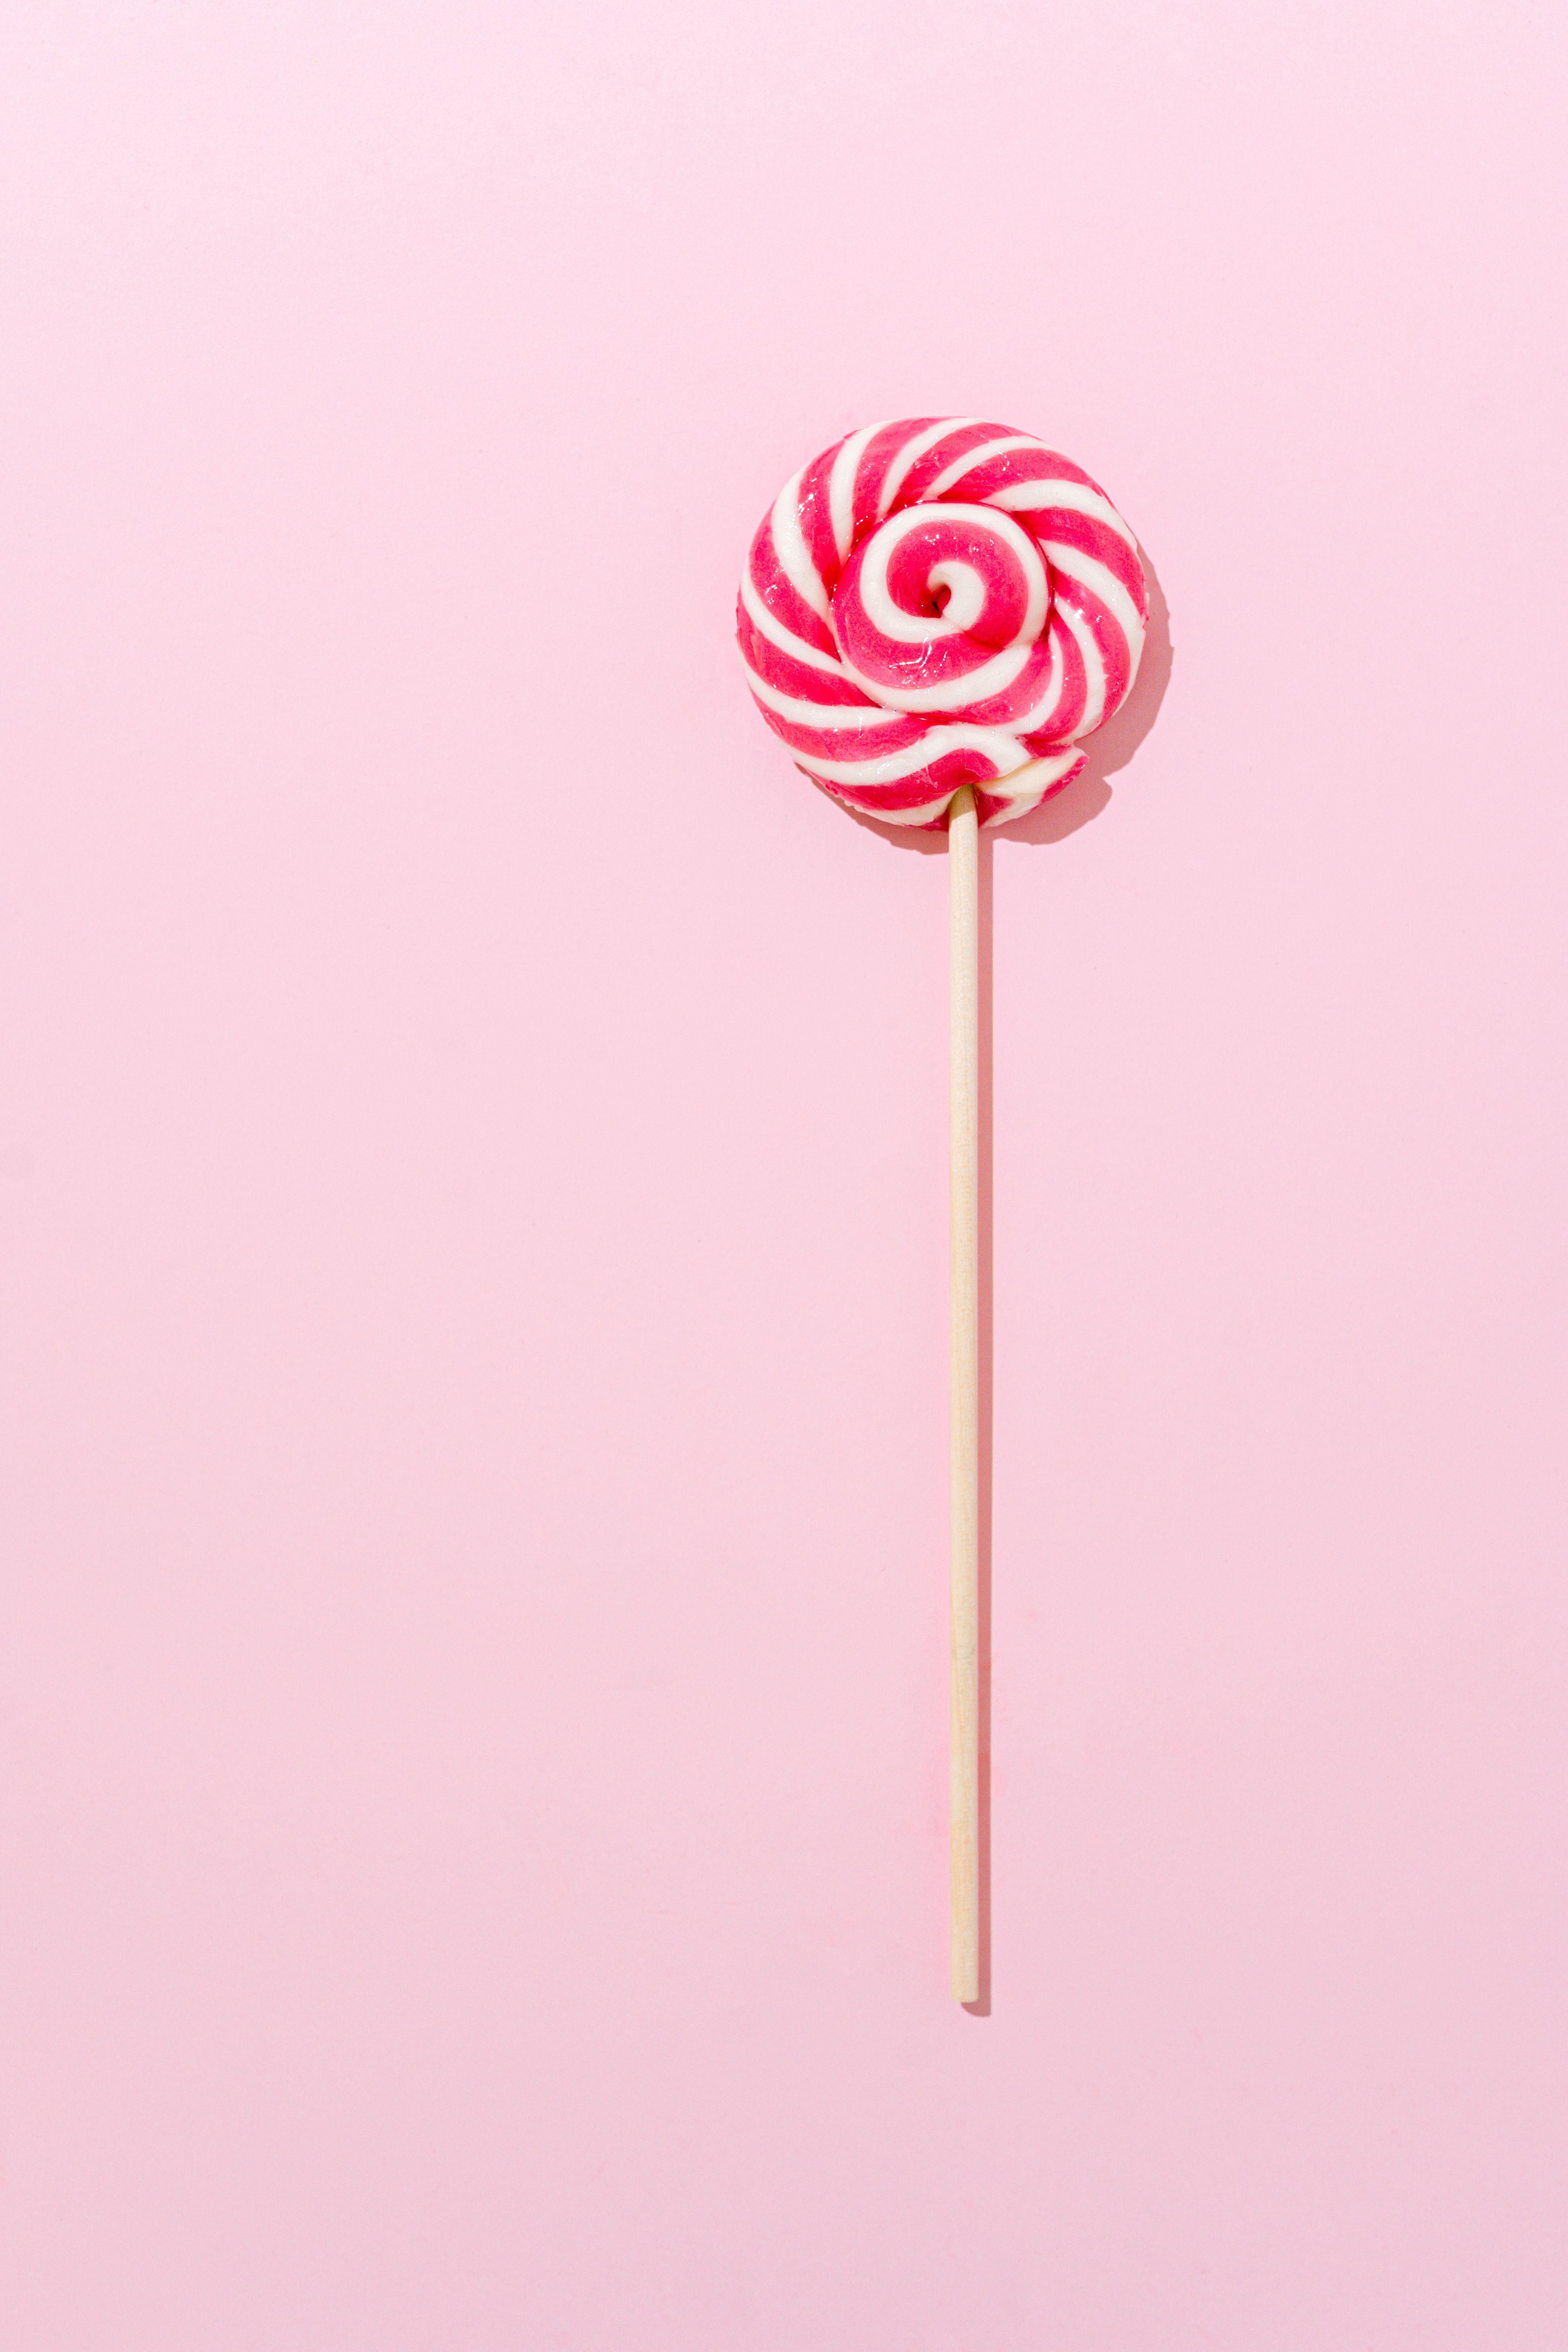  Süßigkeiten Hintergrundbild 3924x5886. Kostenloses Foto zum Thema: aufsicht, essen, flatlay, köstlich, lutscher, rosa hintergrund, stock, streifen, süß, süßigkeiten, vertikaler schuss